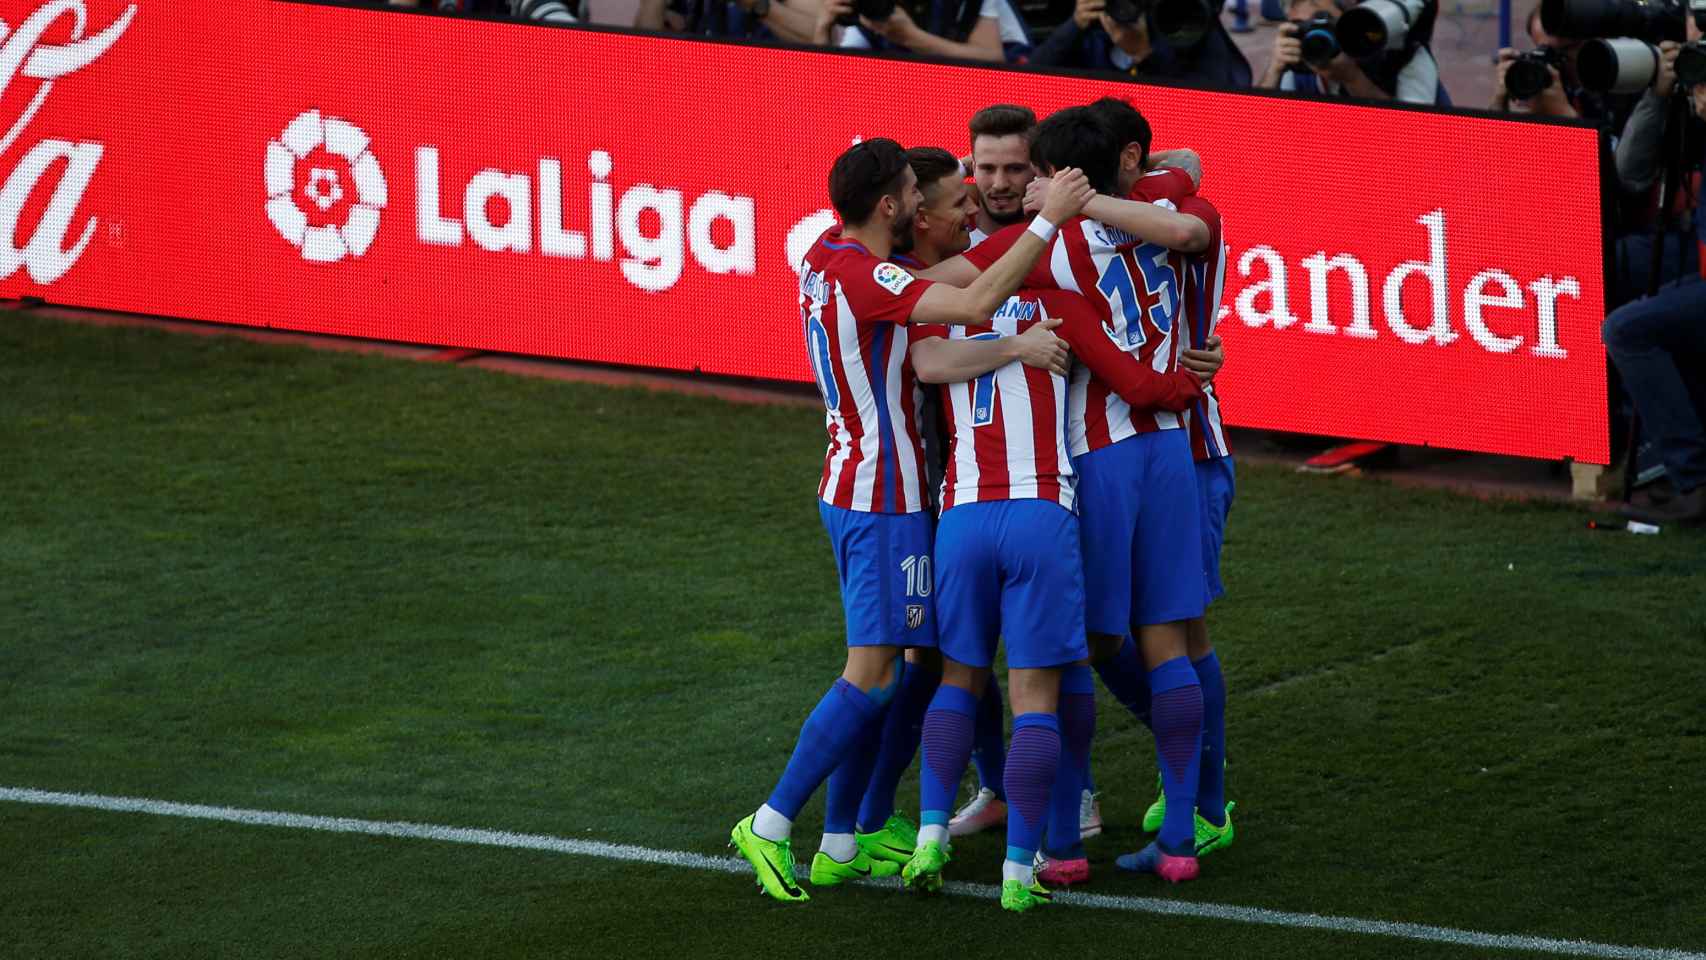 Los jugadores del Atlético de Madrid celebran un gol.